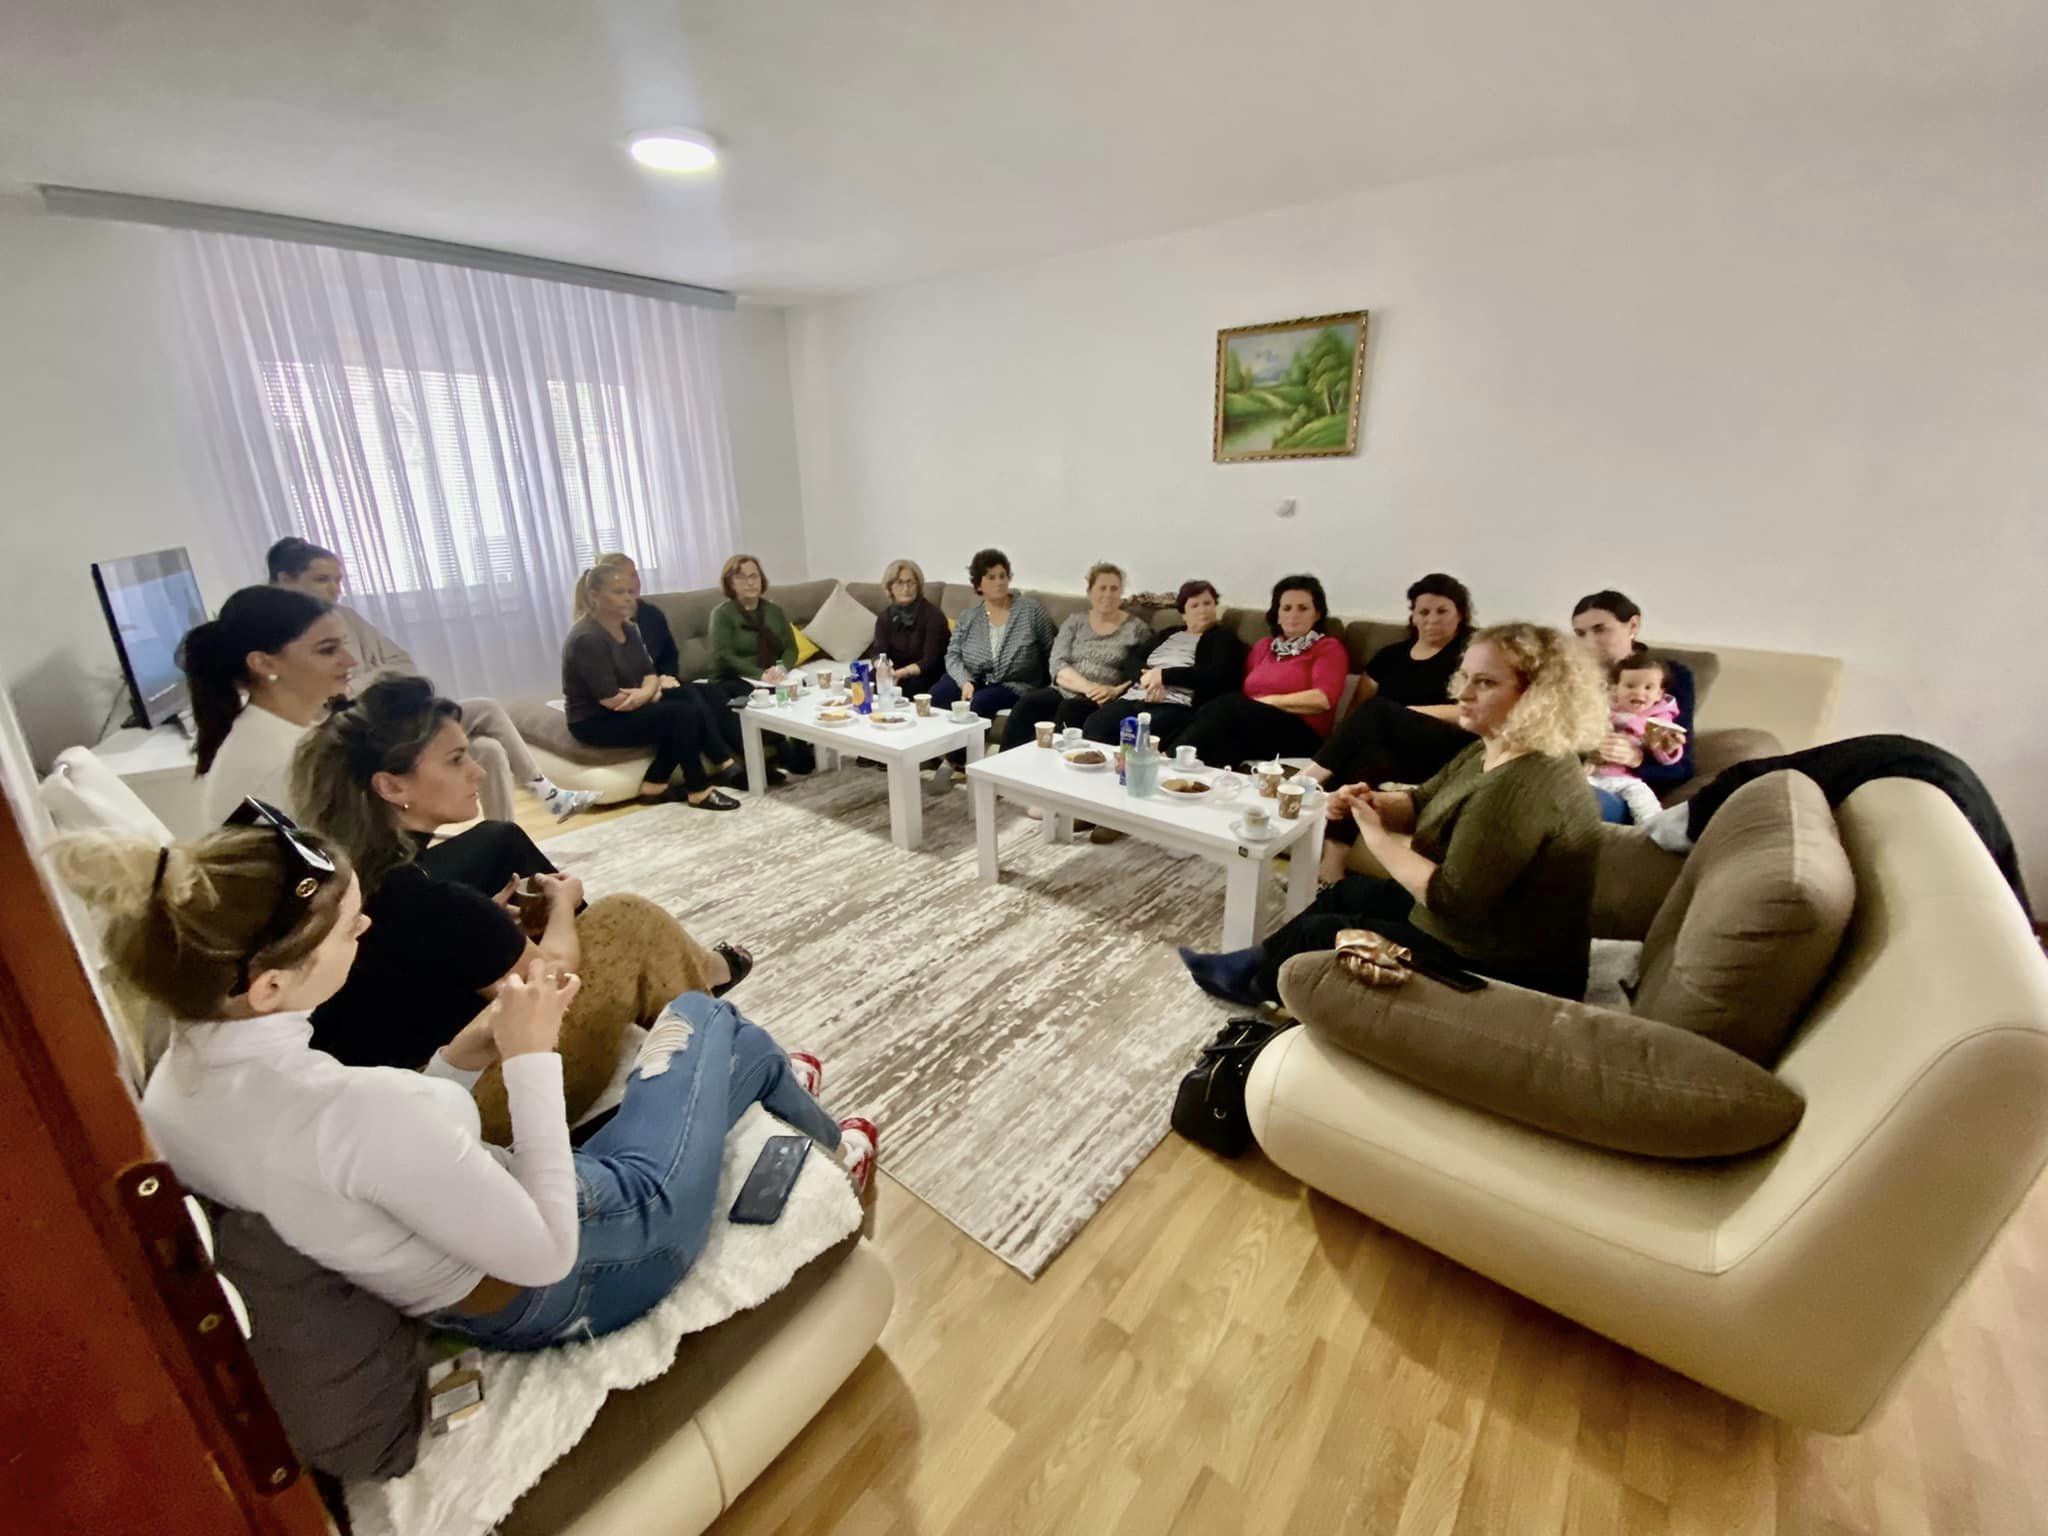 Takim me gratë në fshatrat Maxhunaj dhe Zaskok për të diskutuar me psikologen lidhur me temën “Menaxhimi i stresit”